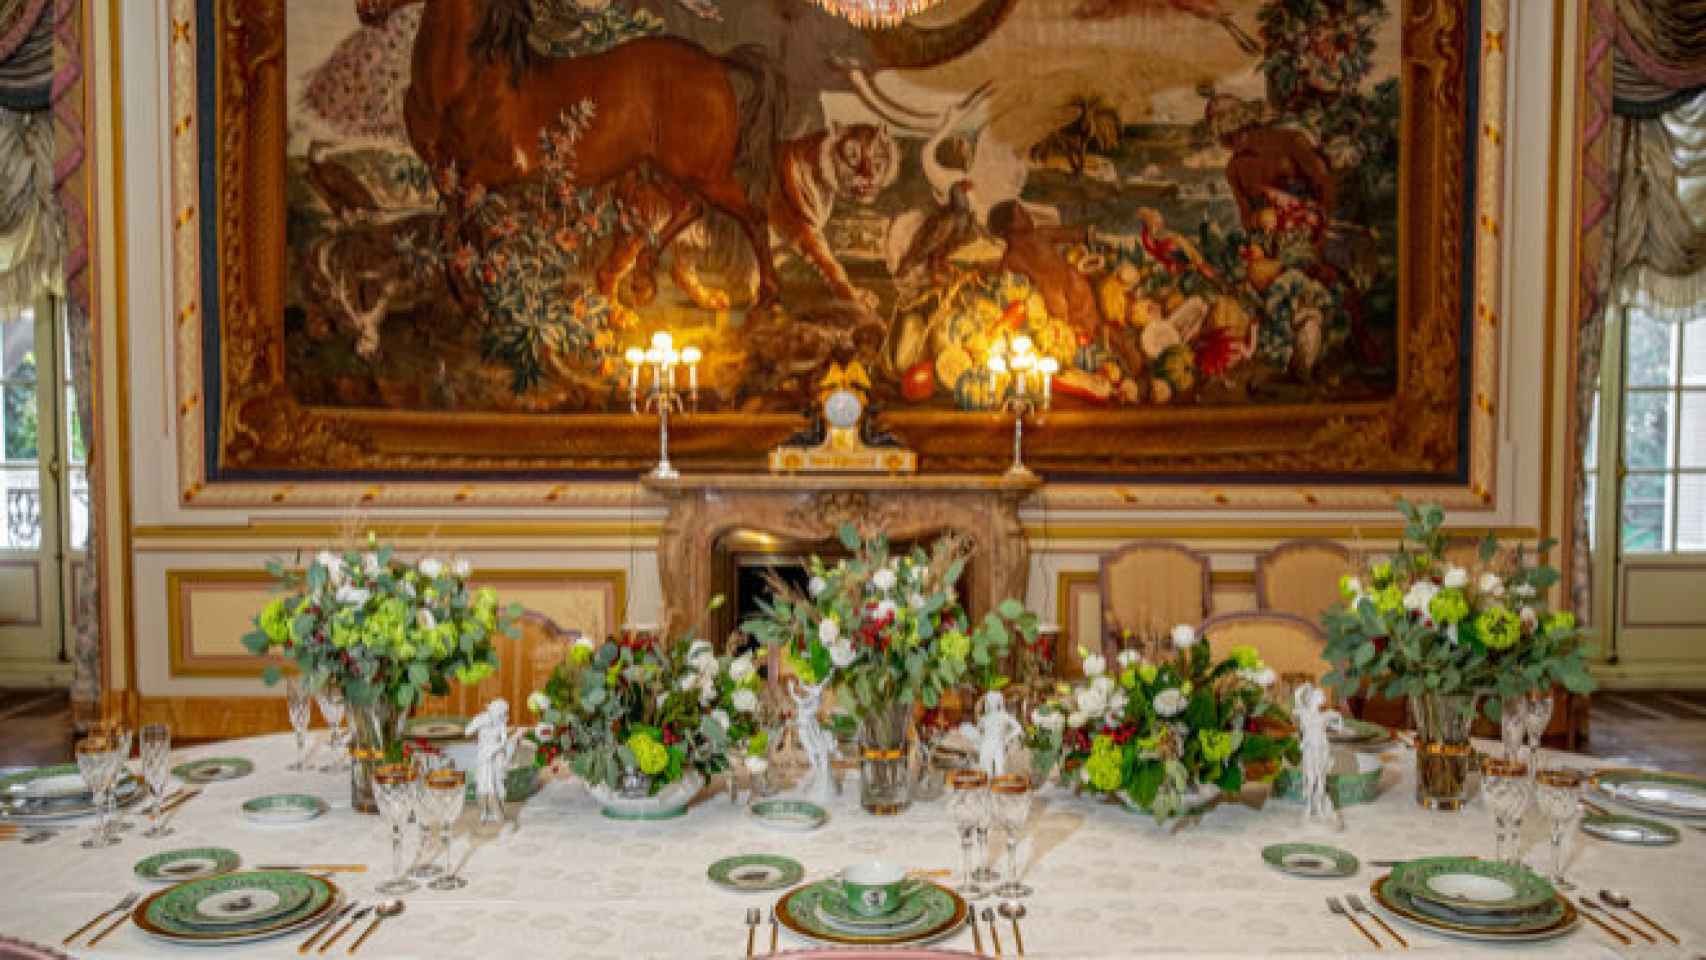 La mesa puesta de la Casa de Alba con la vajilla completa diseñada por Genoveva Casanova.